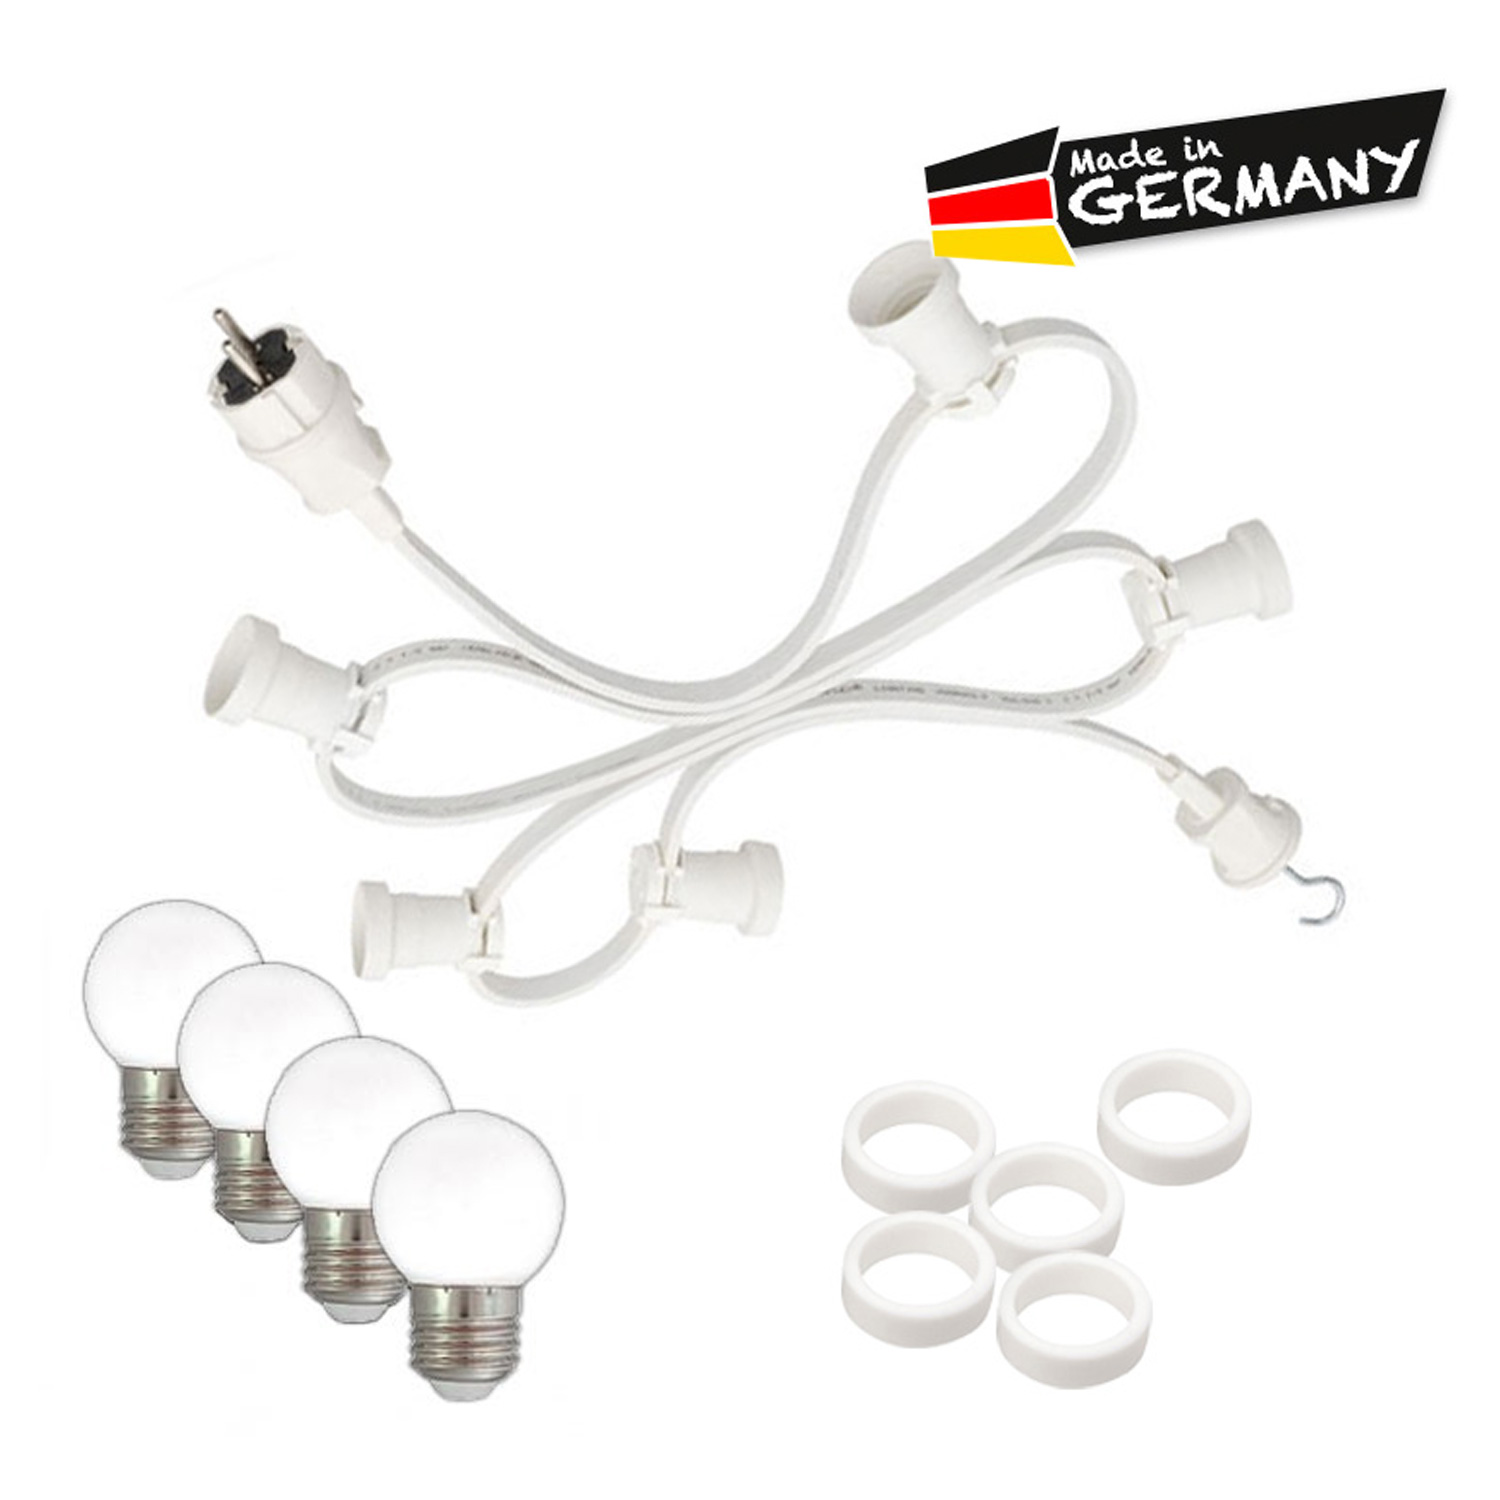 Illu-/Partylichterkette 30m - Außenlichterkette - Made in Germany - 30 x warmweiße LED Kugellampen